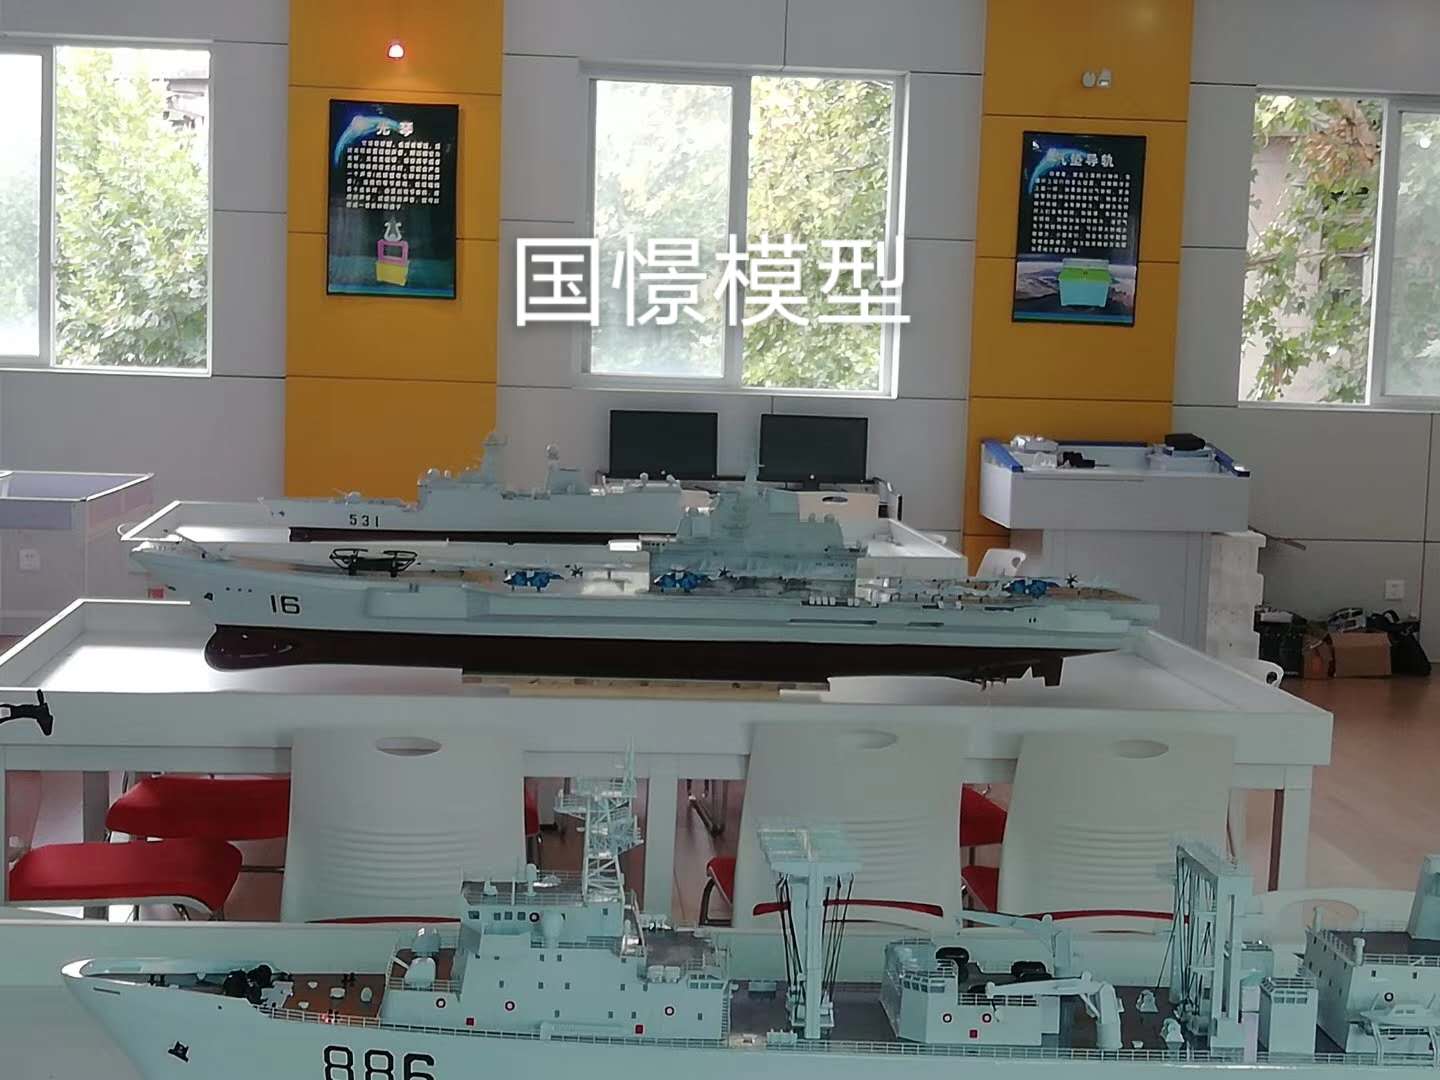 周宁县船舶模型